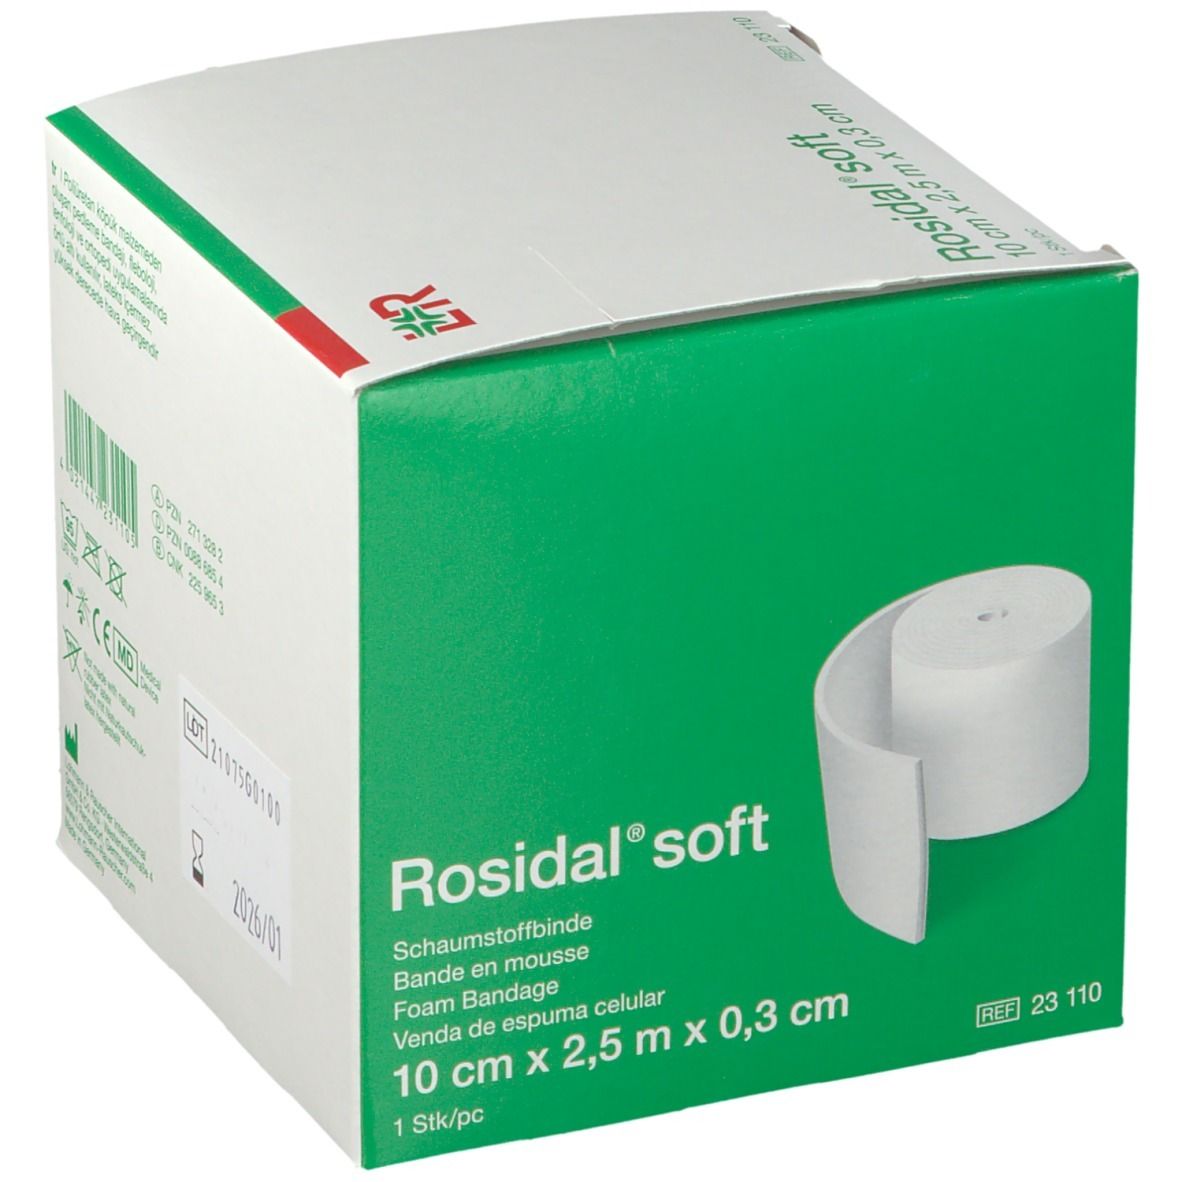 Rosidal® soft 10 cm x 0.3 cm x 2.5 m